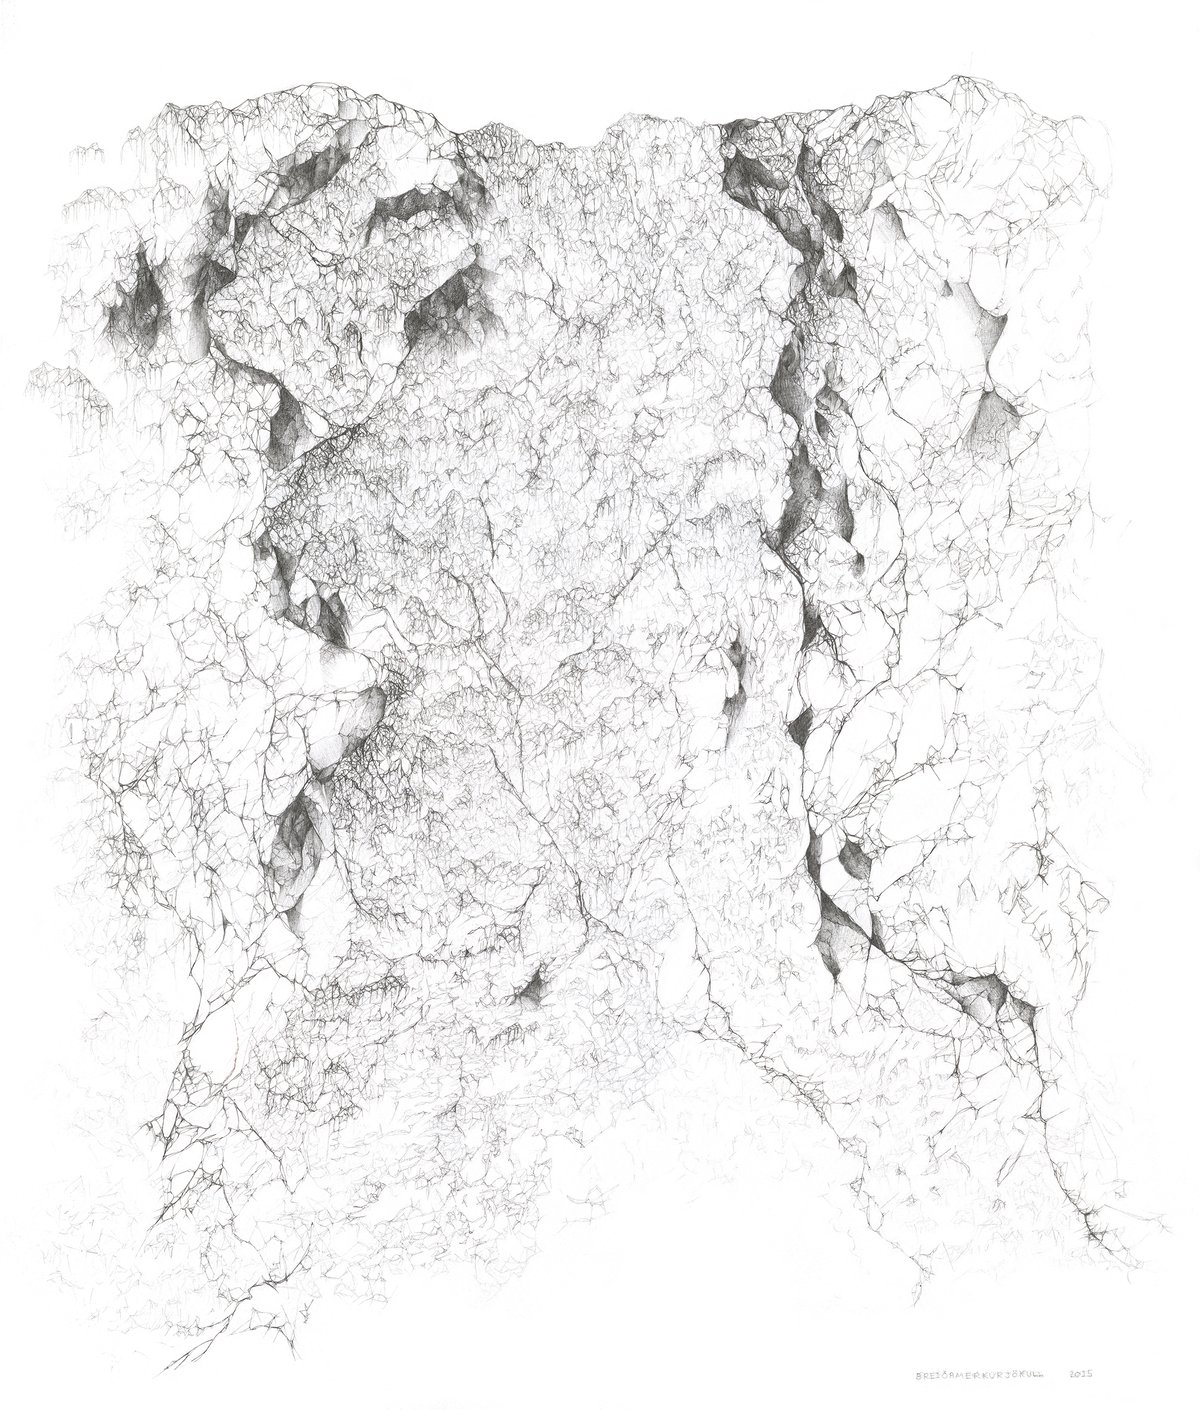 Image of Breiðamerkurjökull Glacier - Archival Giclée Print 